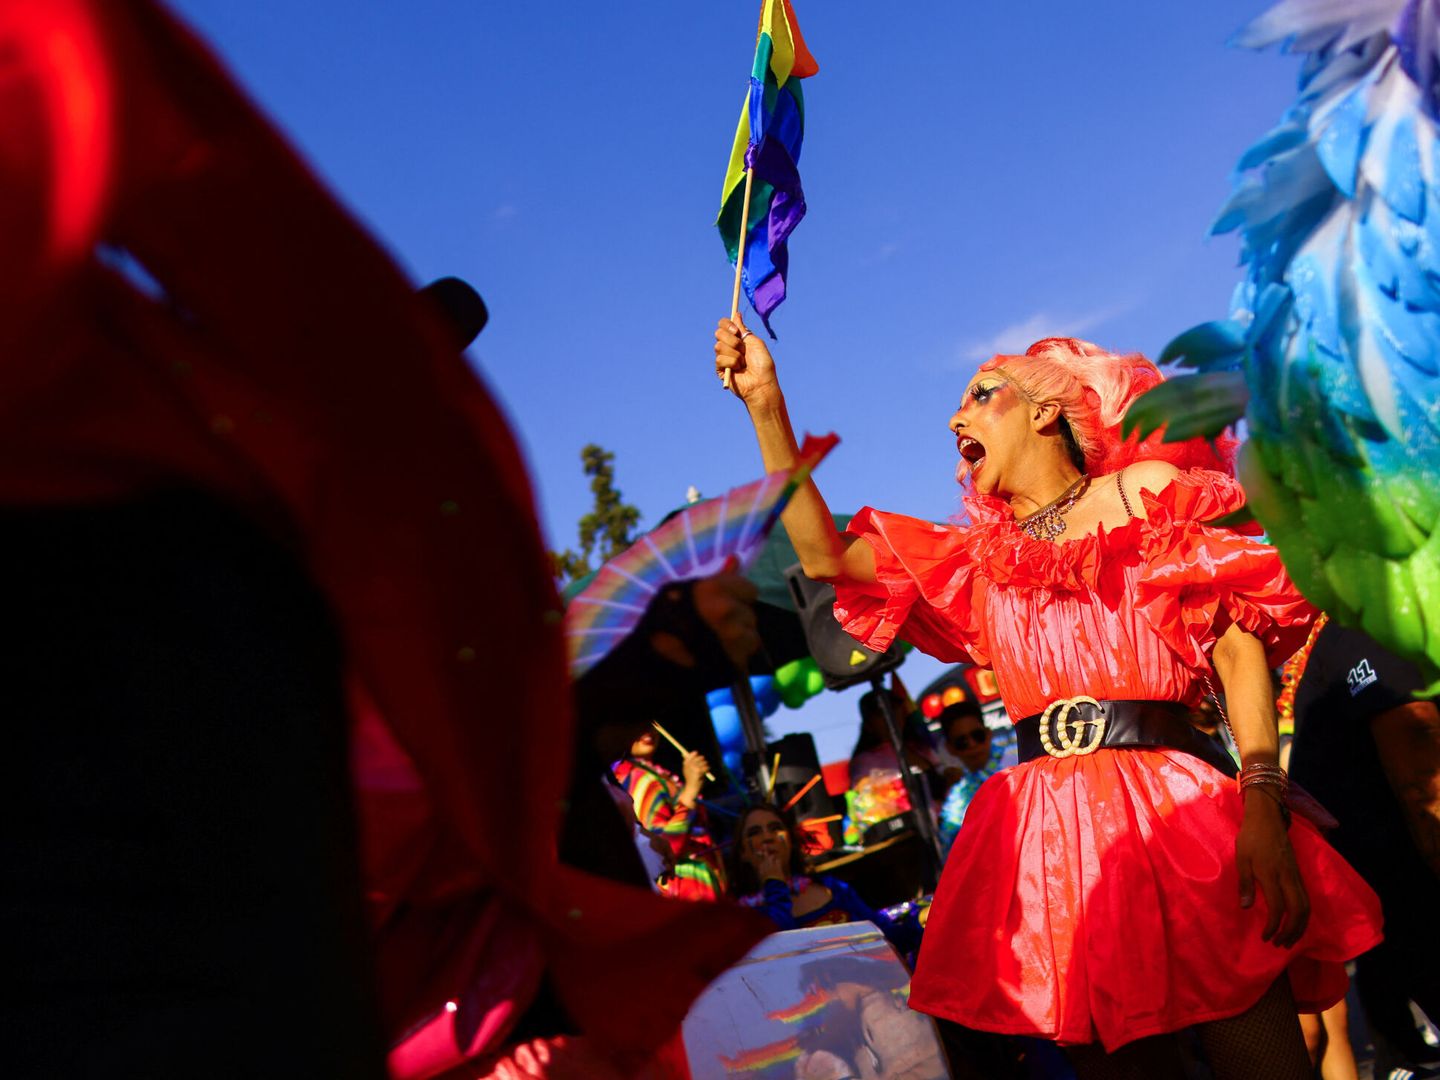 Miles de personas celebran el mes del Orgullo LGBT+ con distintos eventos en el mundo